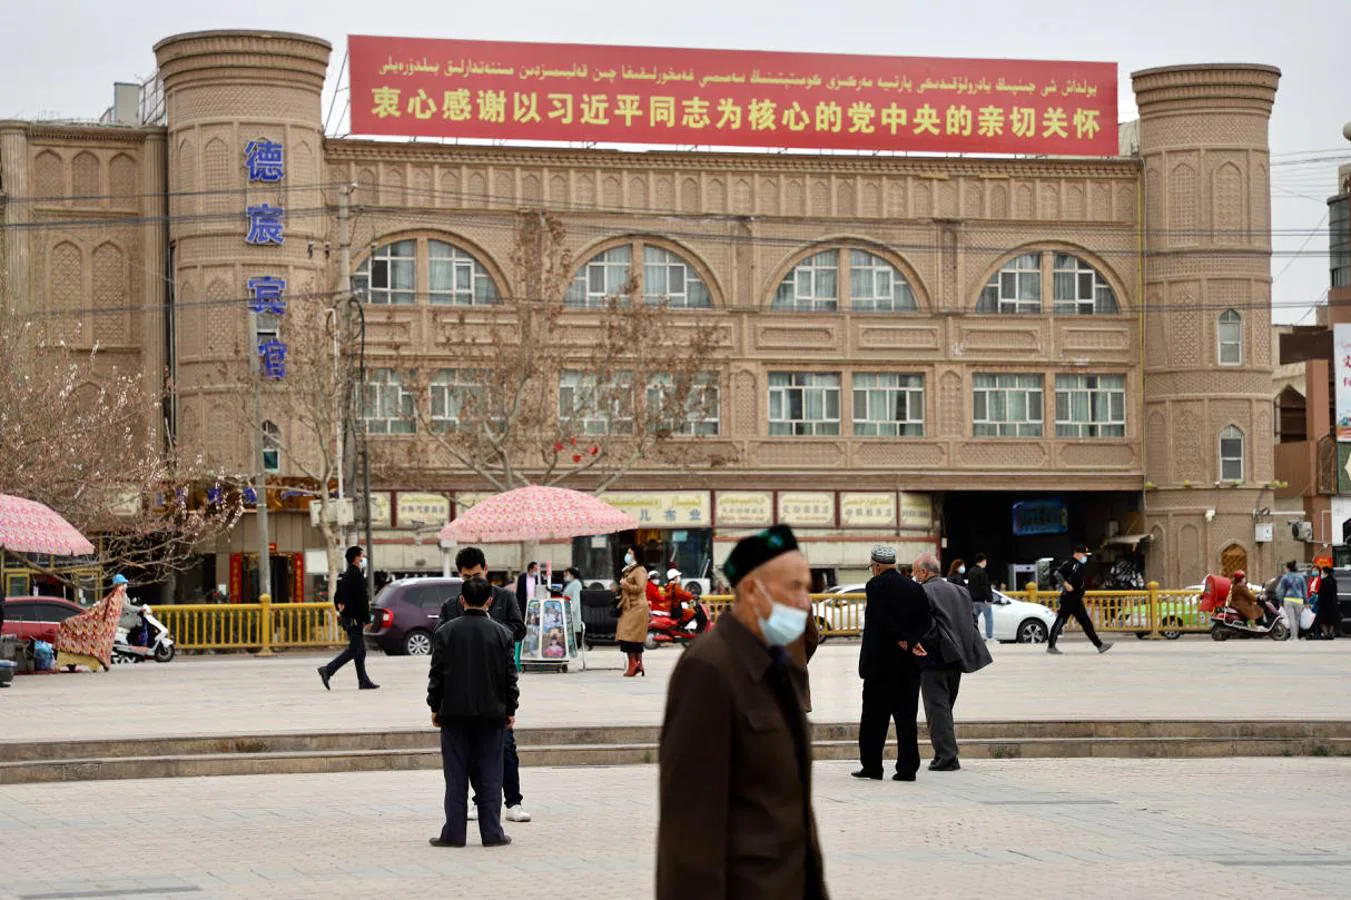 «Sincero agradecimiento por su cuidado al presidente Xi Jinping como núcleo del Comité Central del Partido Comunista», reza este cartel de la propaganda en el centro de Kashgar congratulándose de la seguridad que ha traído la campaña antiterrorista. 